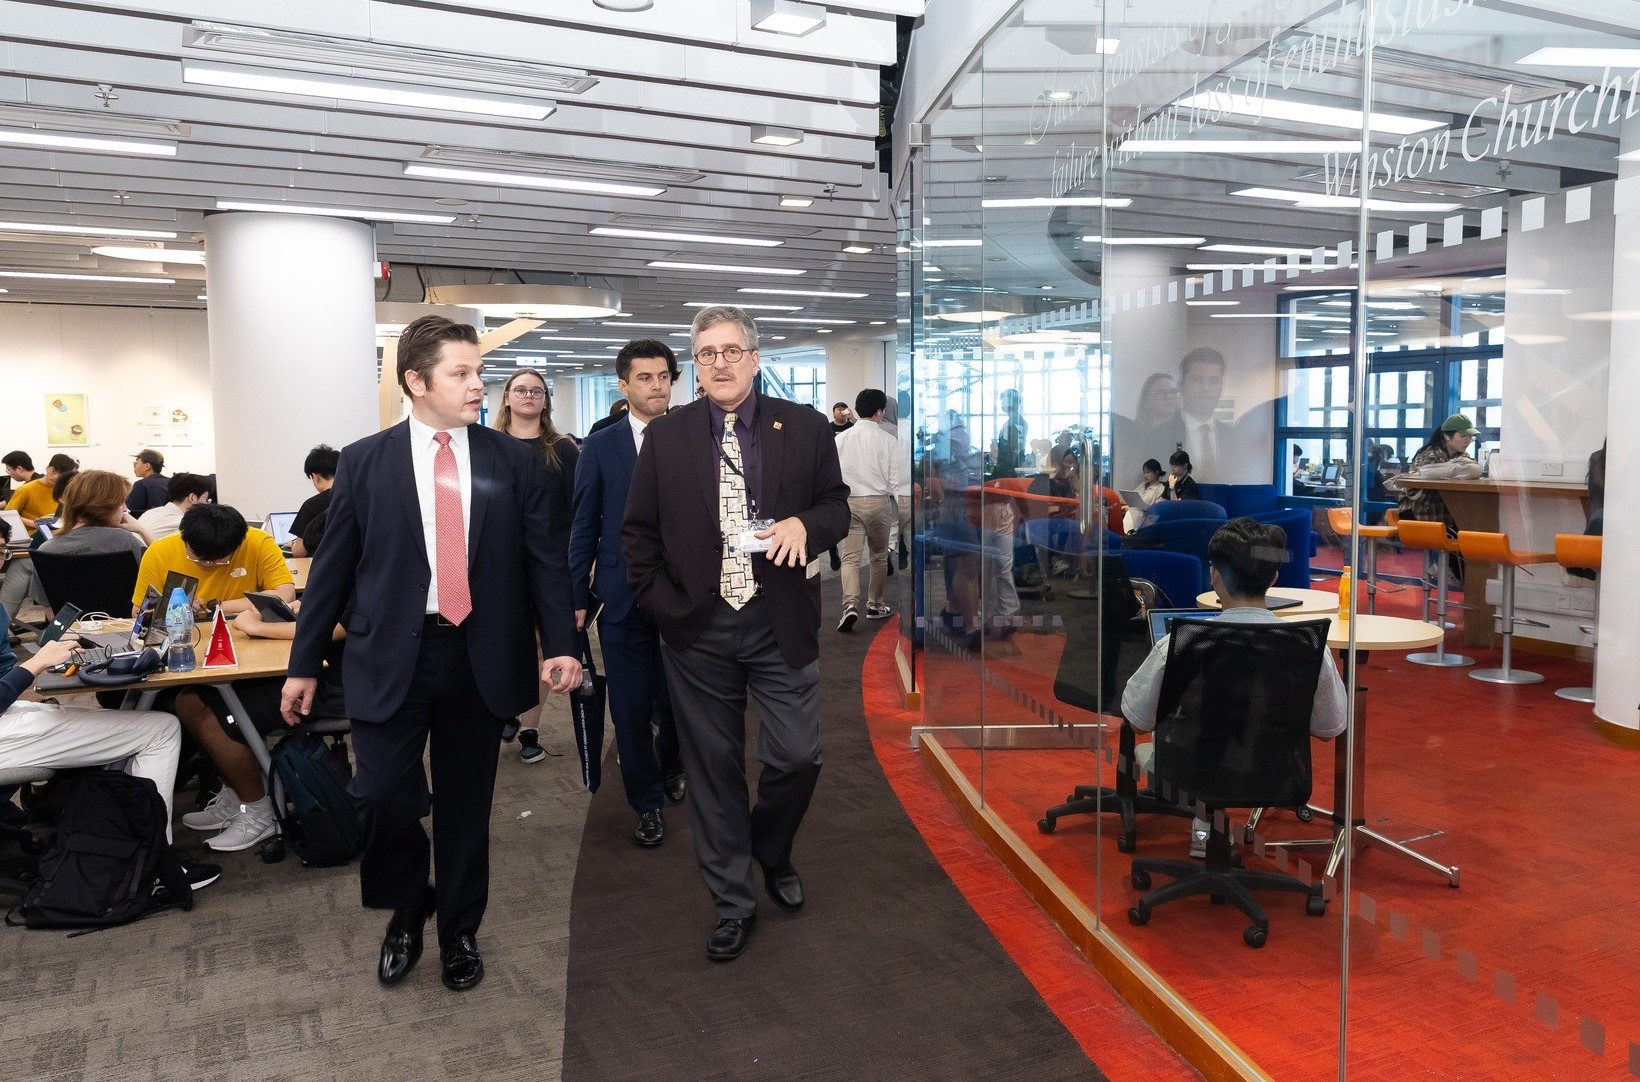 土耳其共和国驻香港总领事 Kerim EVCIN及其代表团参观科大李兆基图书馆。